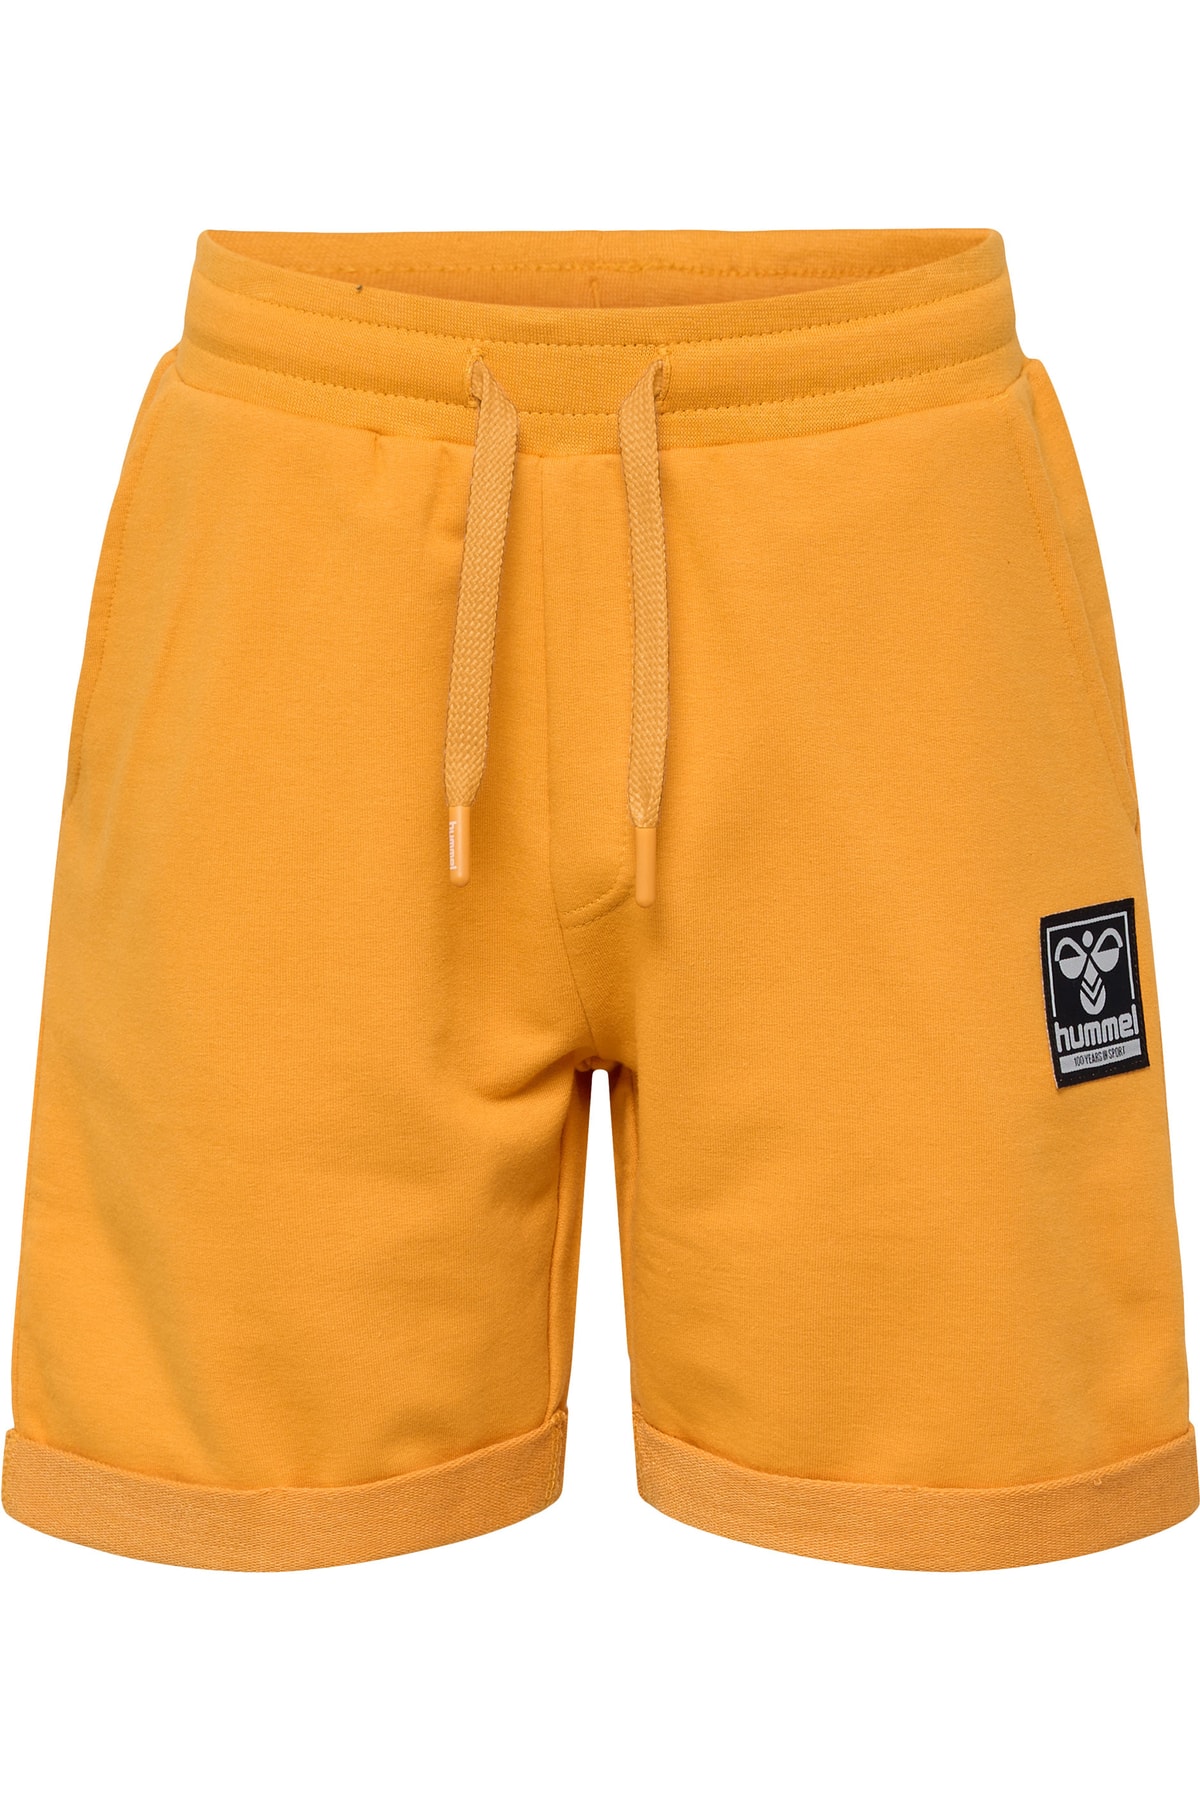 HUMMEL Shorts Orange Mittlerer Bund